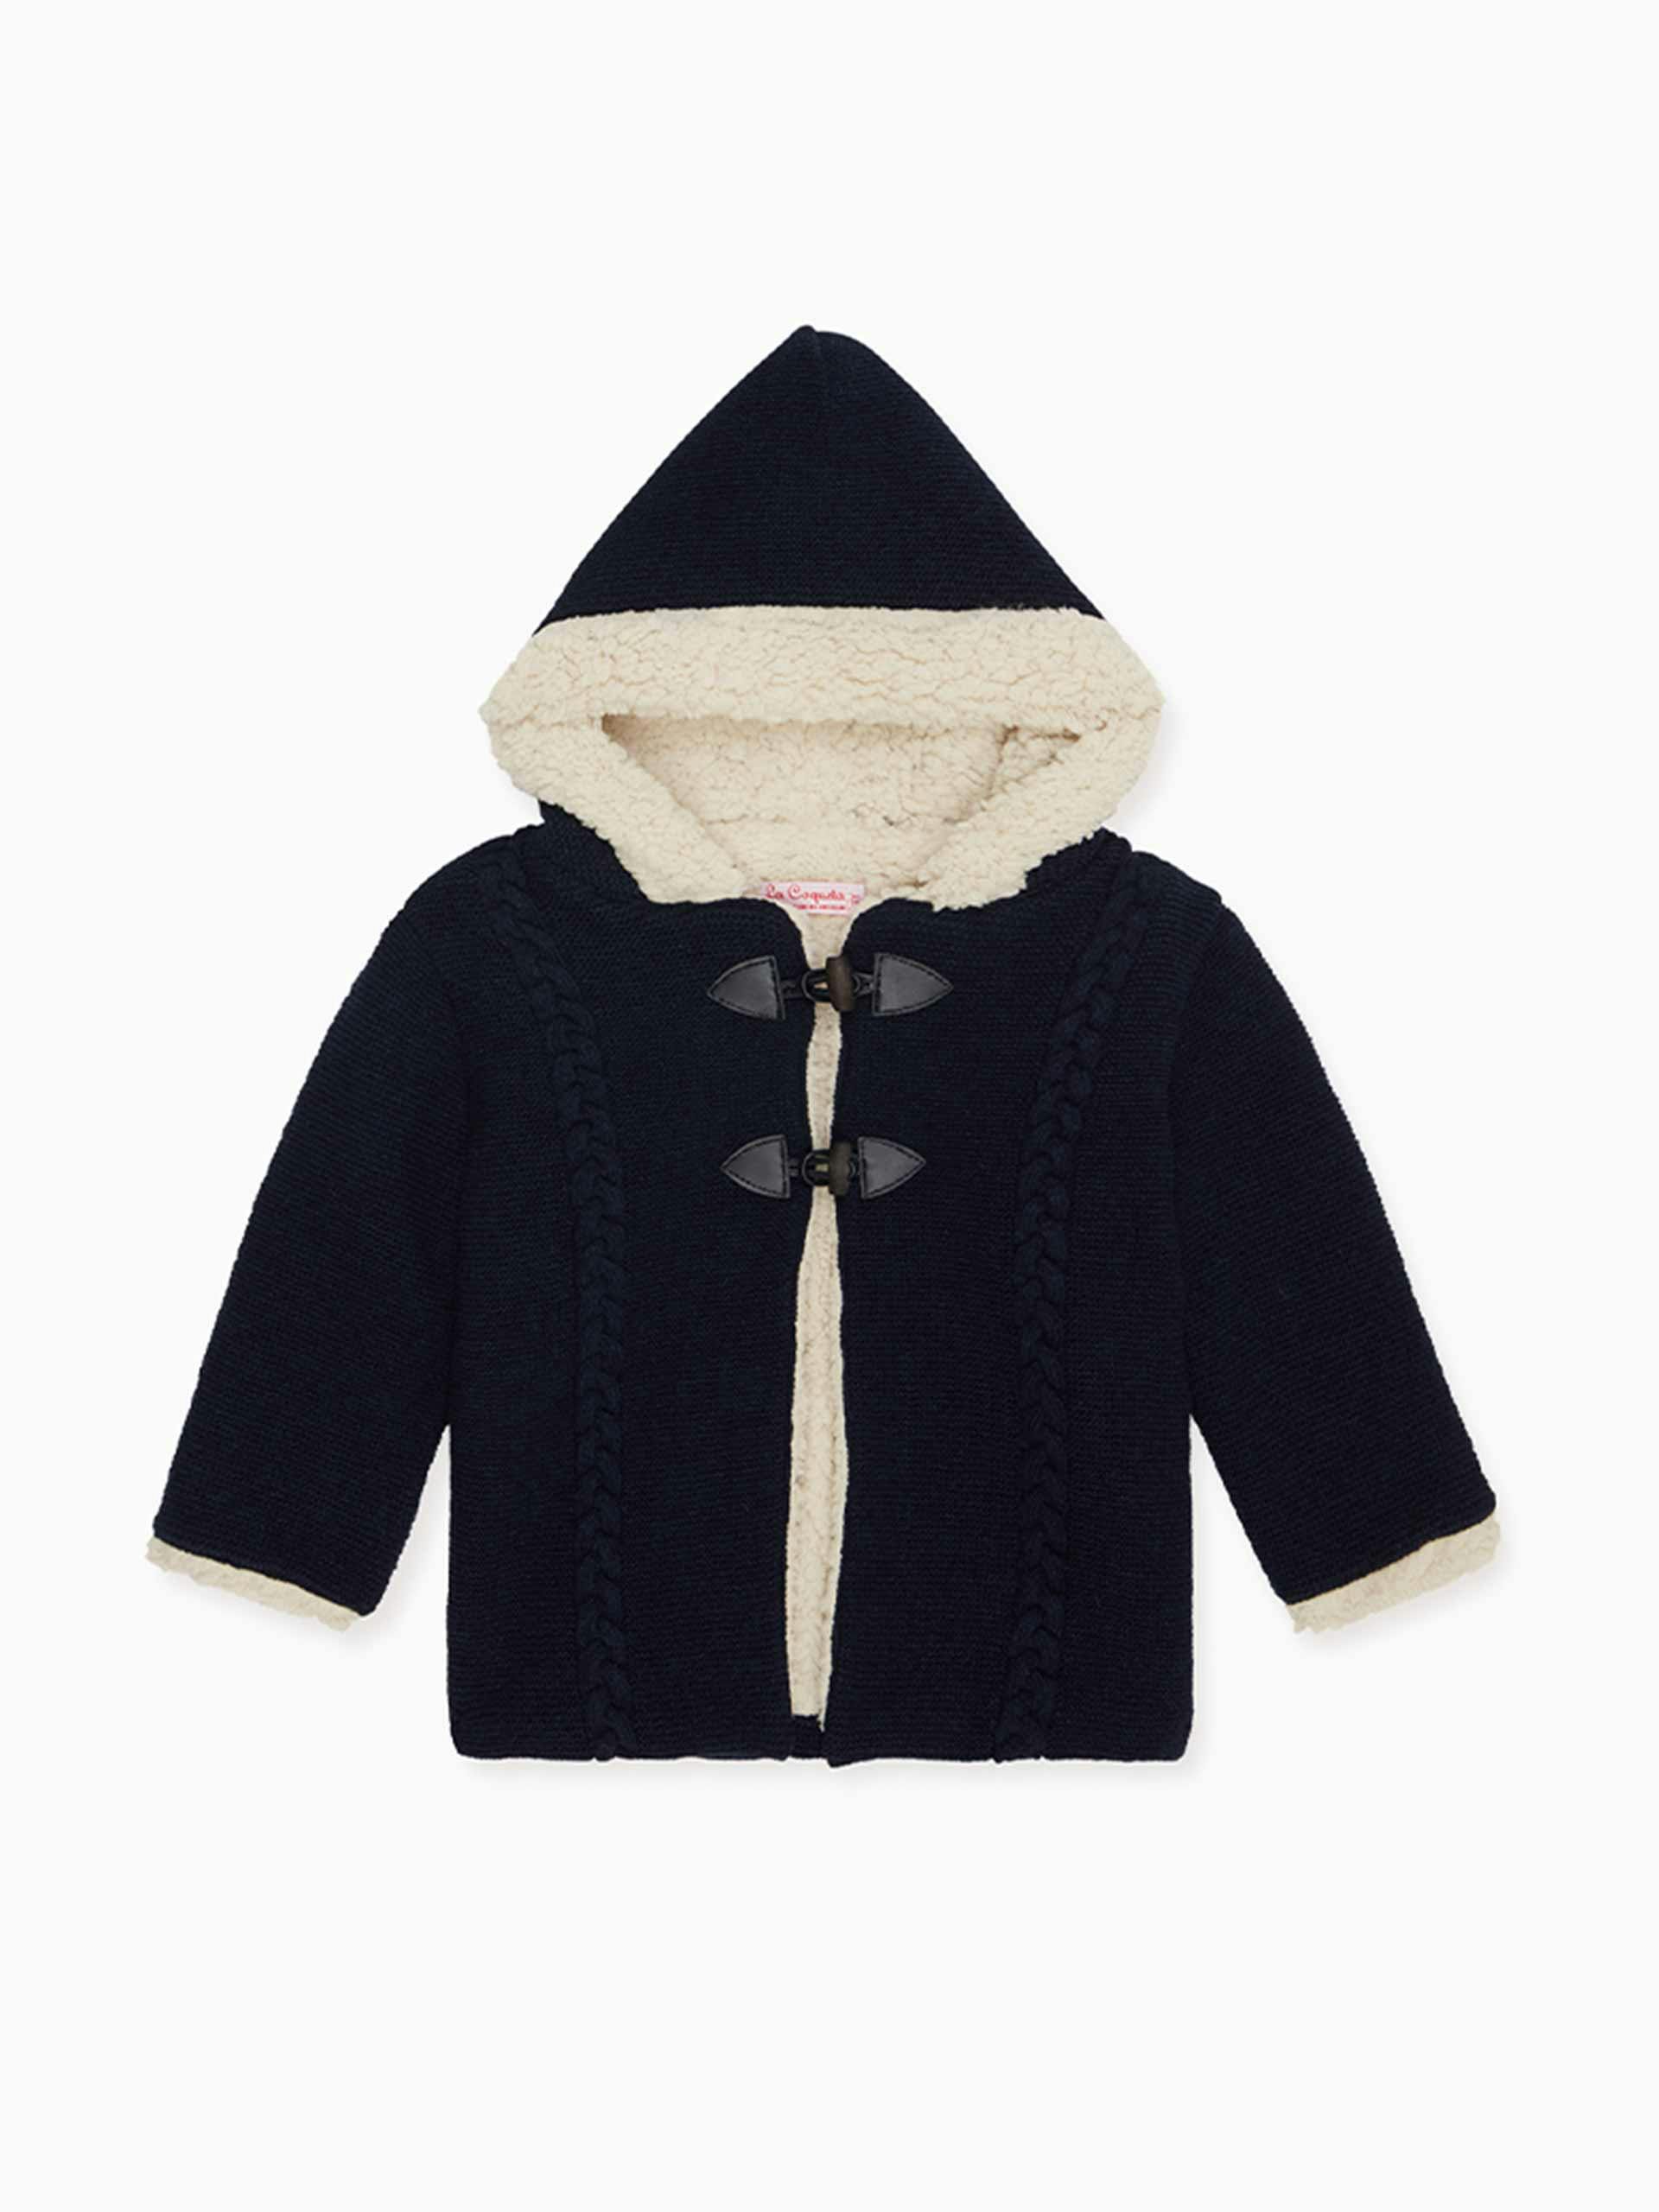 Merino baby wool jacket